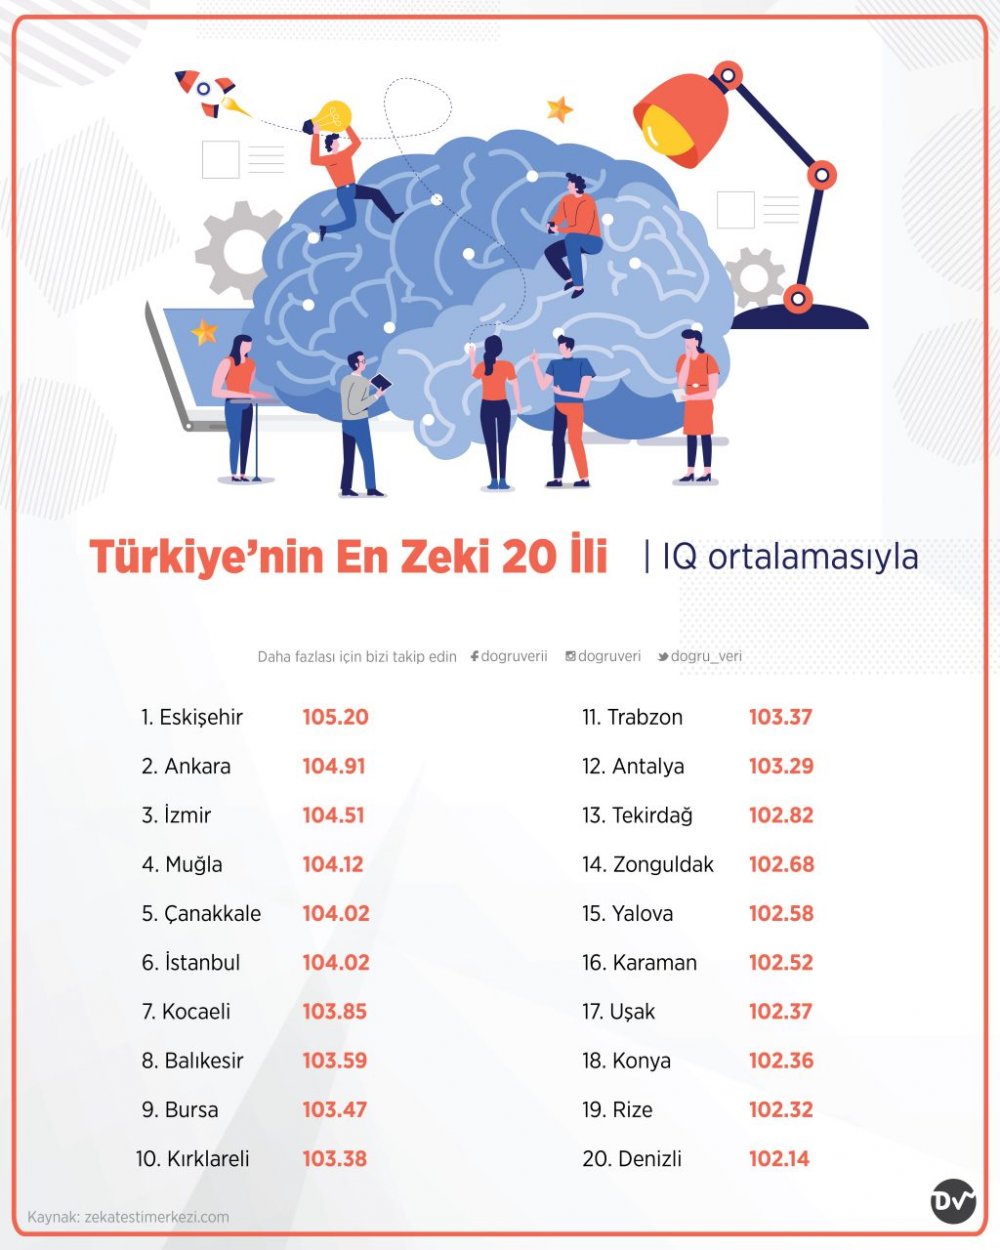 Denizli, ‘Zeka Testi Merkezi’ tarafından internet ortamında yapılan IQ testinde 20’nci sırada yer alarak Türkiye’nin en zeki illeri arasında yer aldı. Sıralamada ilk sırada Eskişehir yer alırken, Denizli zeka sıralamasında da 20’den vazgeçmemiş.